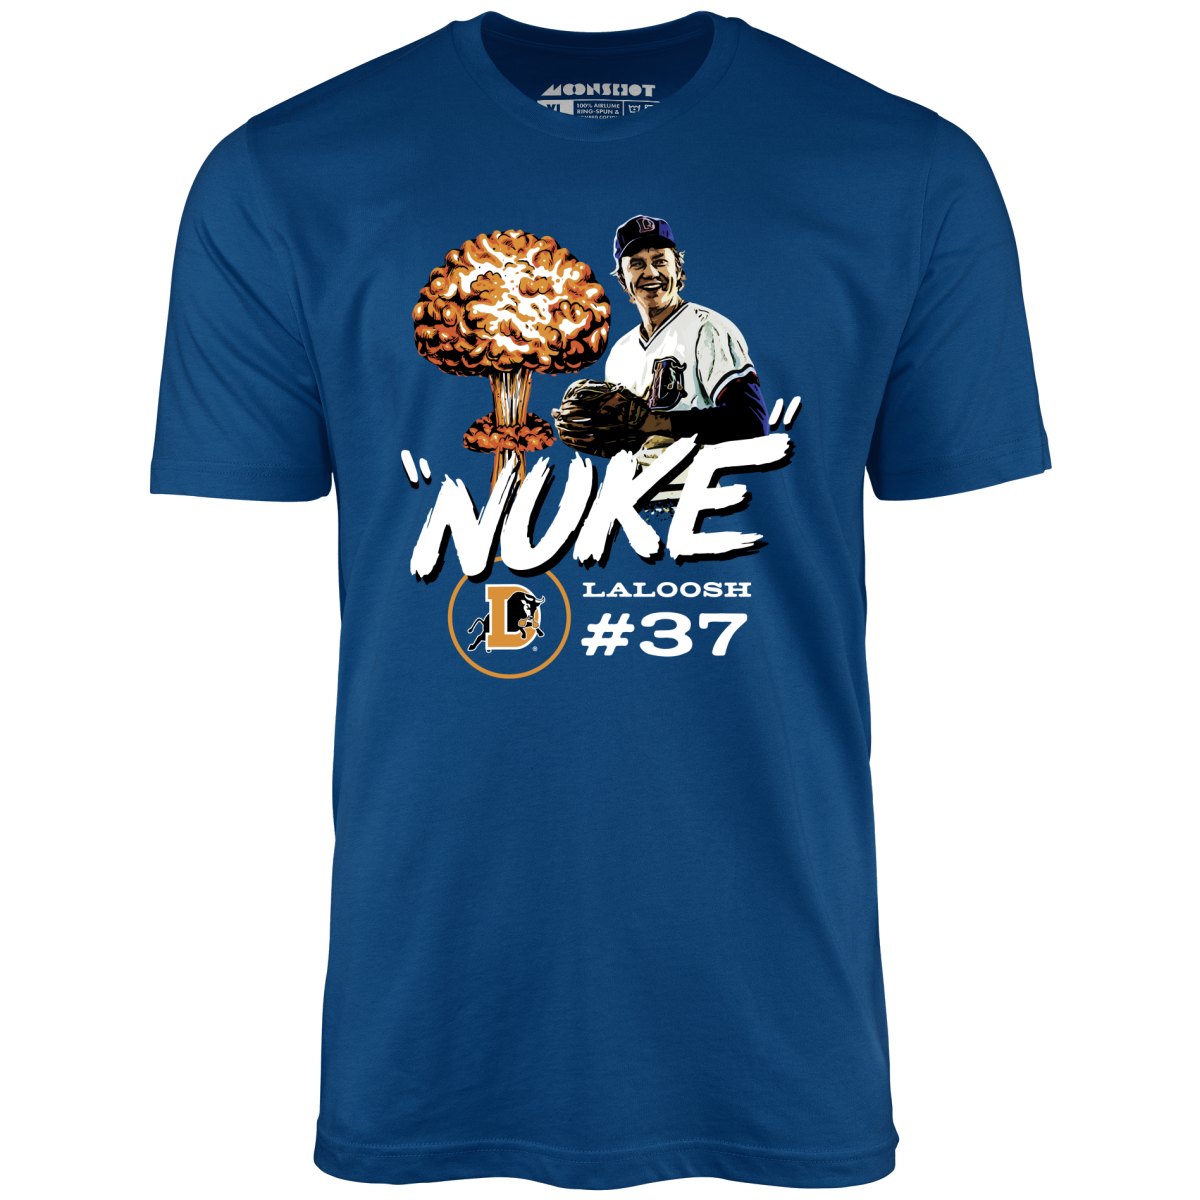 Nuke Laloosh Tribute - Unisex T-Shirt